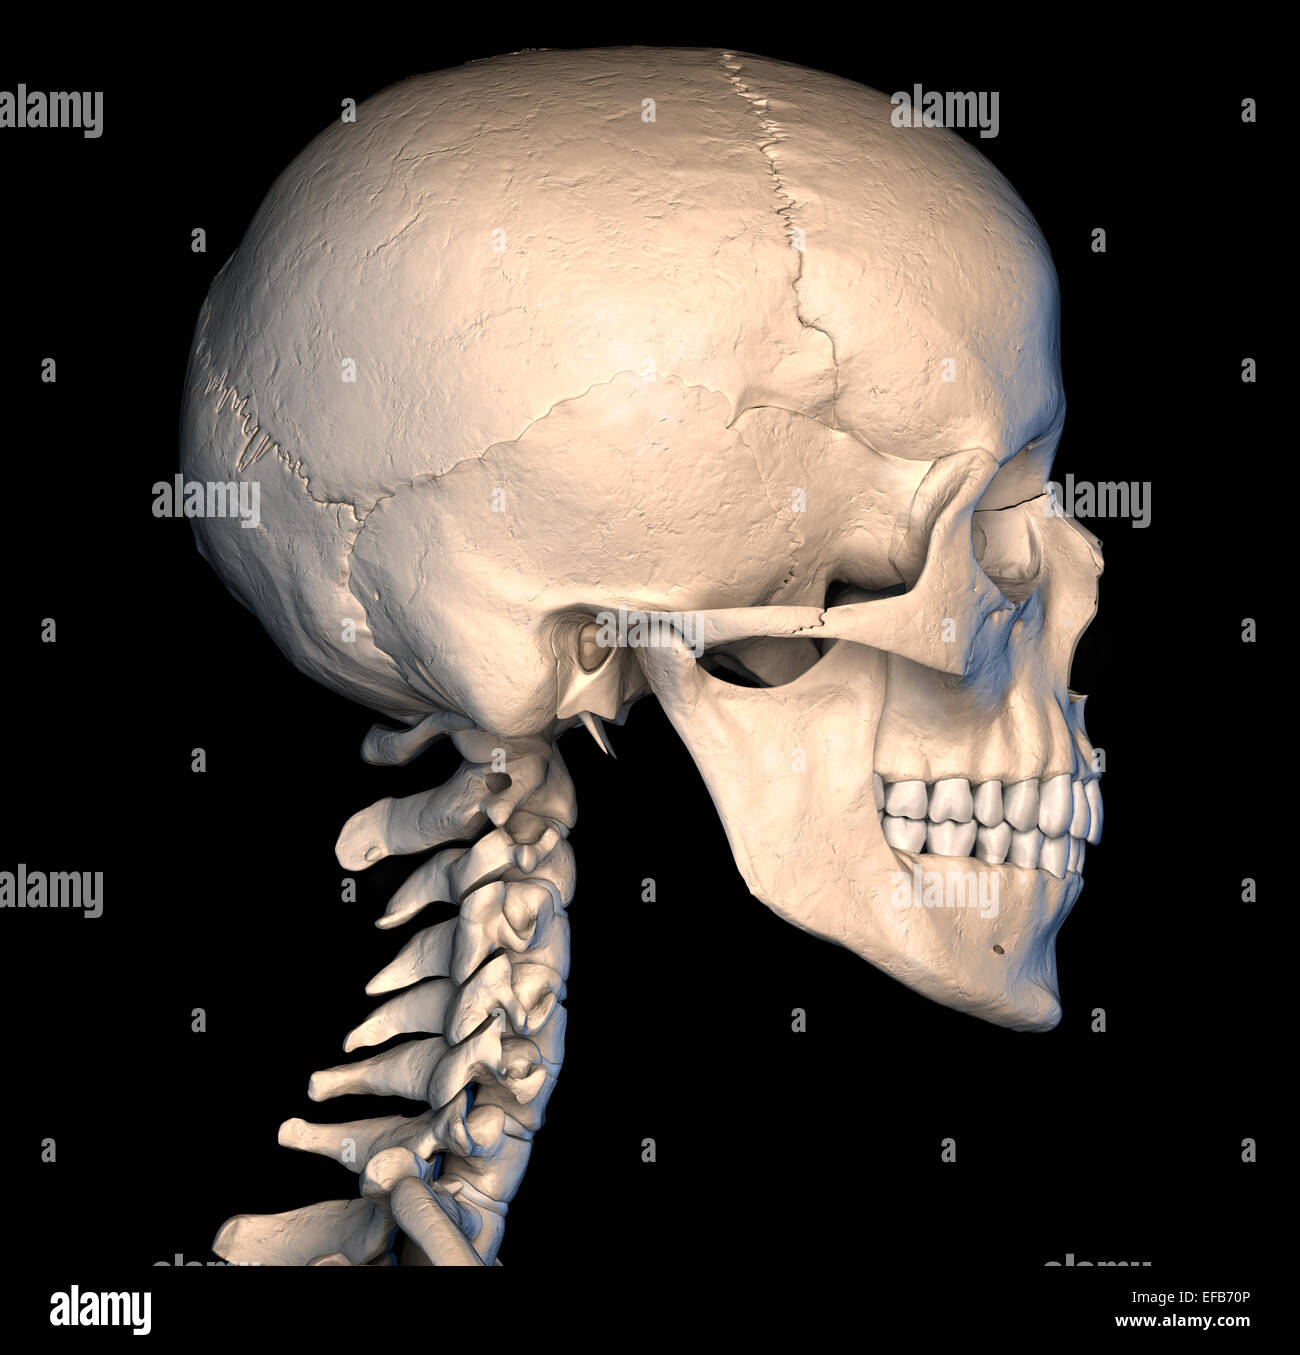 Molto dettagliata e scientificamente corretta teschio umano. vista laterale, su sfondo nero. Immagine di anatomia. Foto Stock